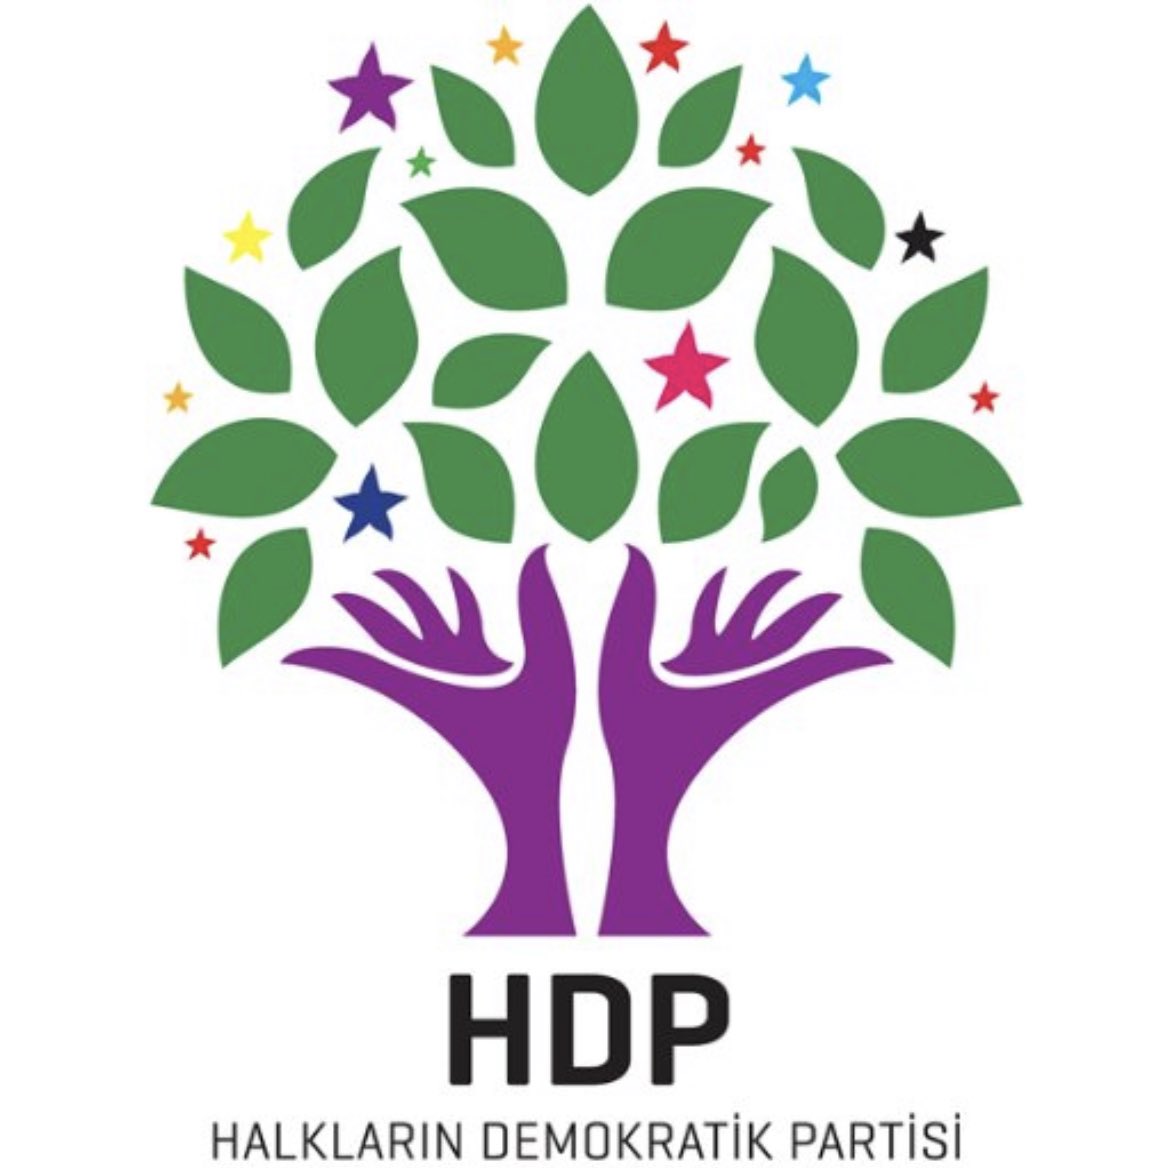 Sosyal medya paylaşımları gerekçesiyle bugün ifade verdim Emin olun Bizim Tweetrda HDP yi savunmamızdan bile korkuyorlar 
Asla boyun eğmeyeçeğiz 
HDP Bizim partimizdir
HDP Kürt halkının özgürlüğü için mücadele eden siyasi bir partidir.
#HDP
#HDPHalktır